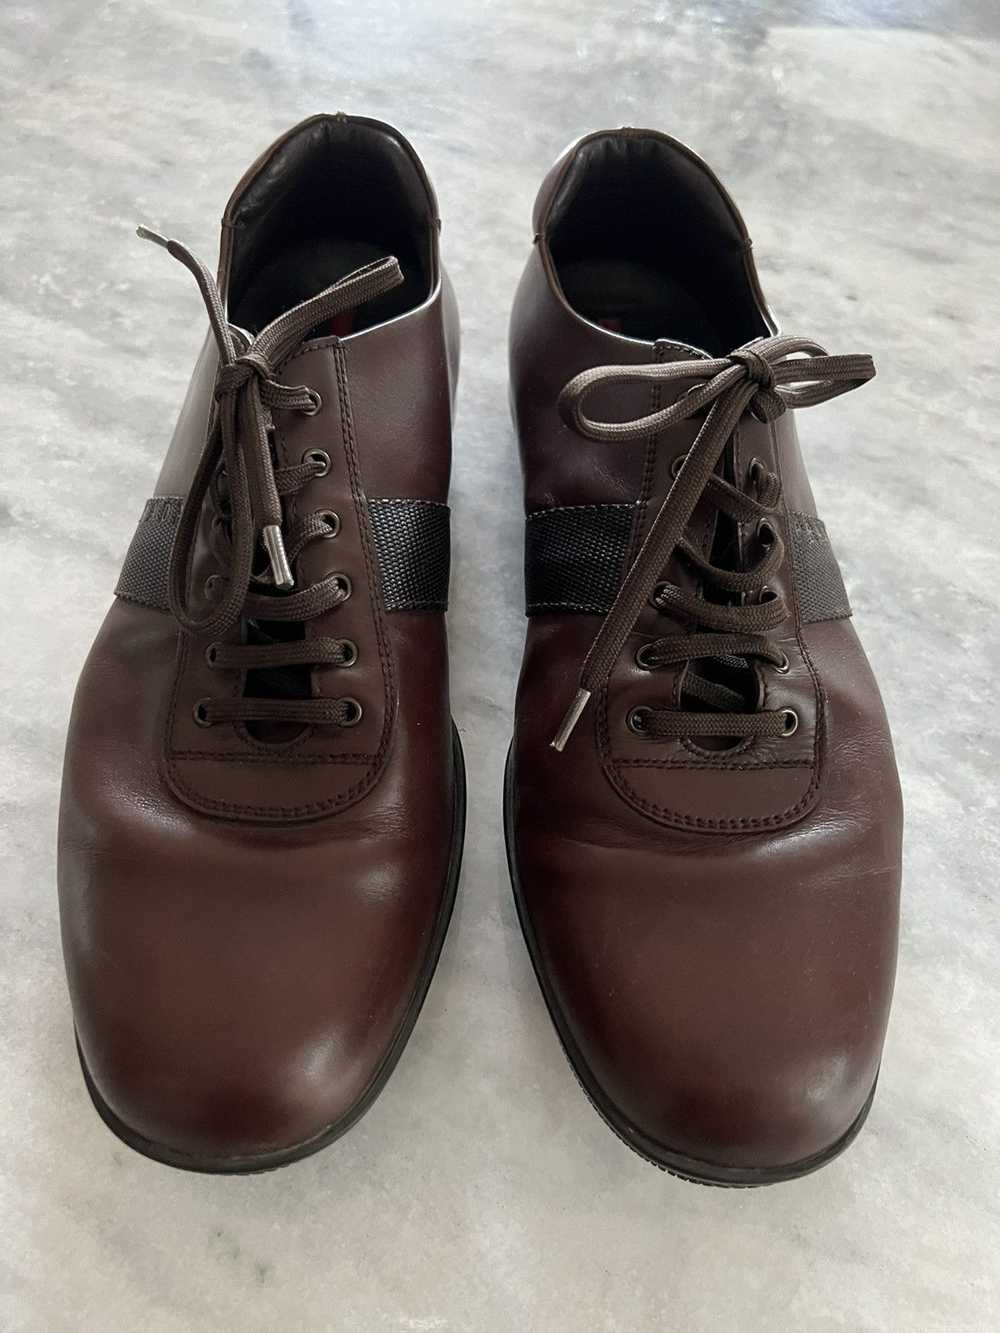 Prada Prada linea rossa brown leather shoes - image 5